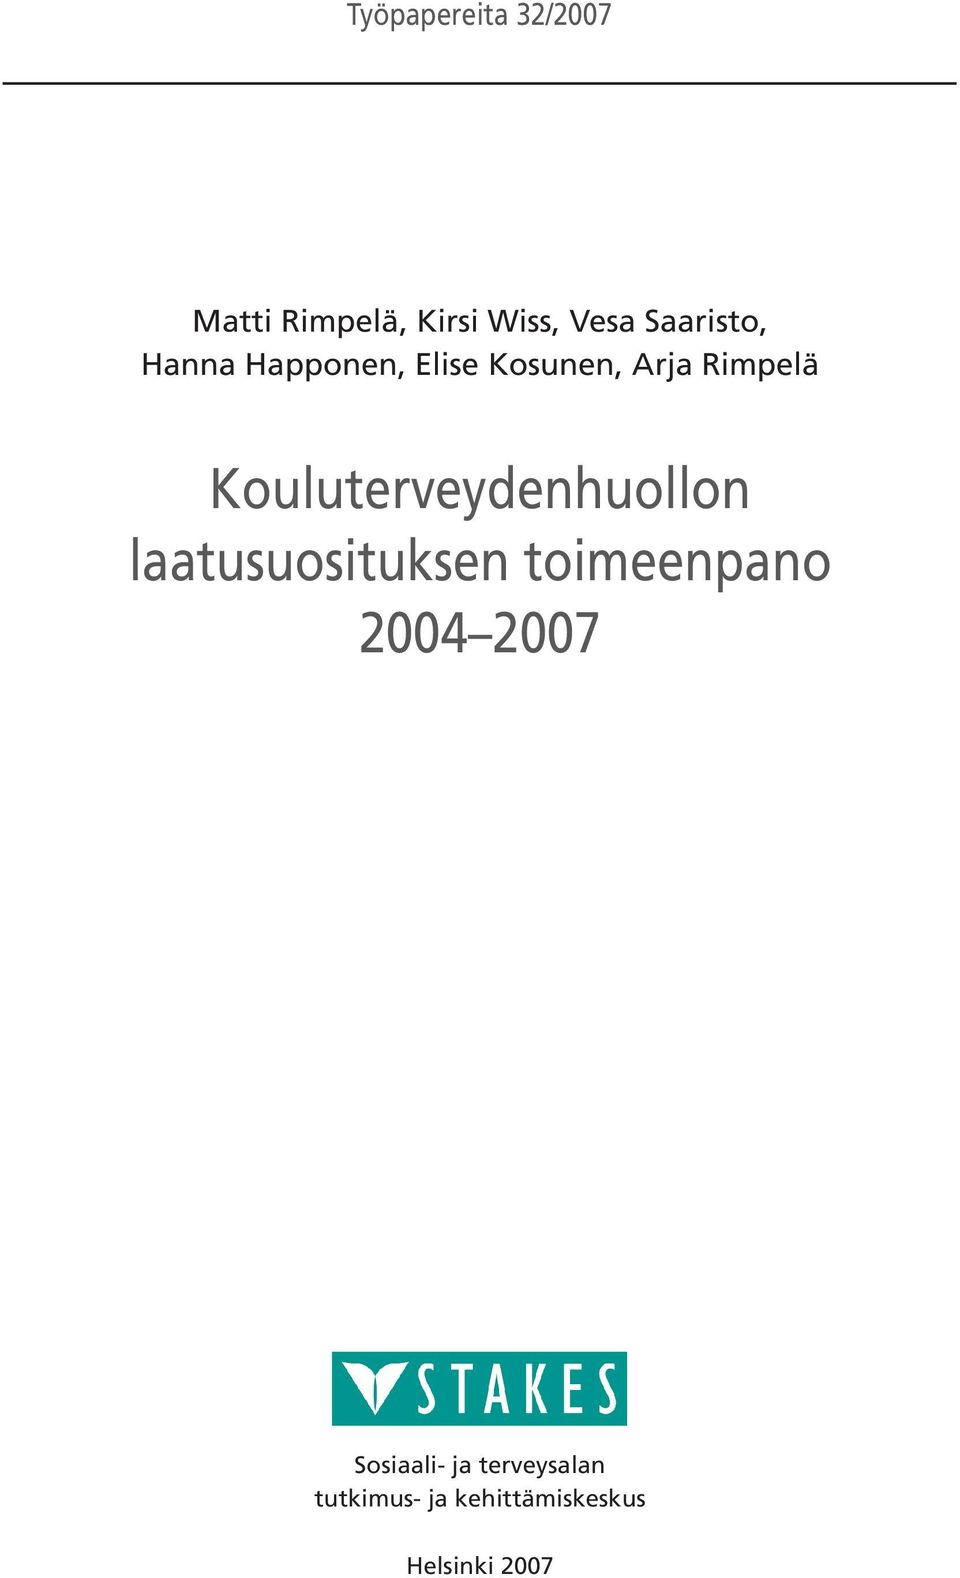 Kouluterveydenhuollon laatusuosituksen toimeenpano 2004